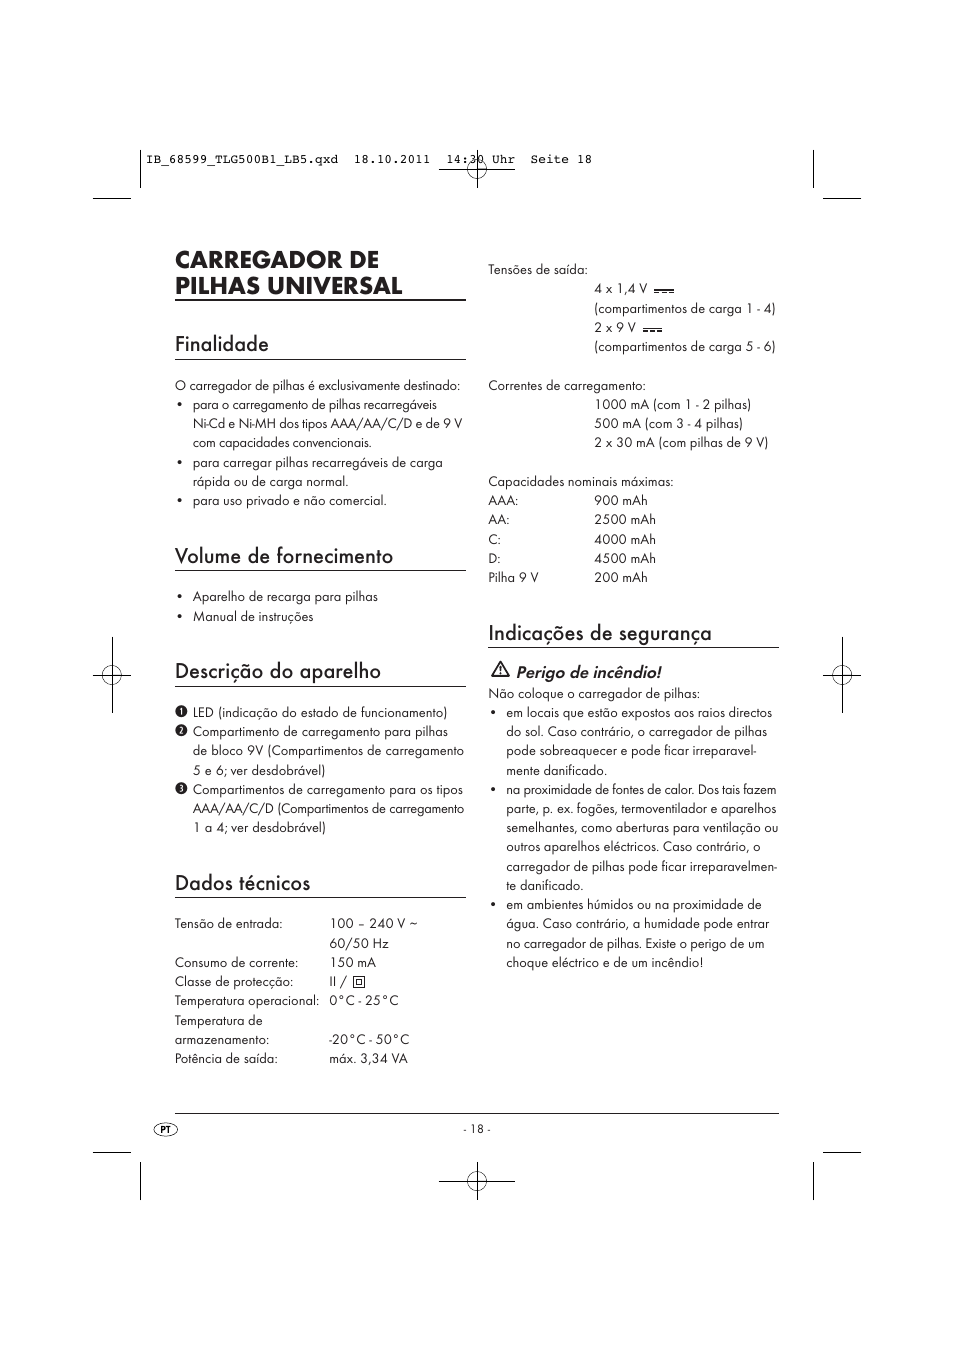 Carregador de pilhas universal, Finalidade, Volume de fornecimento | Tronic  TLG 500 B1 User Manual | Page 20 / 42